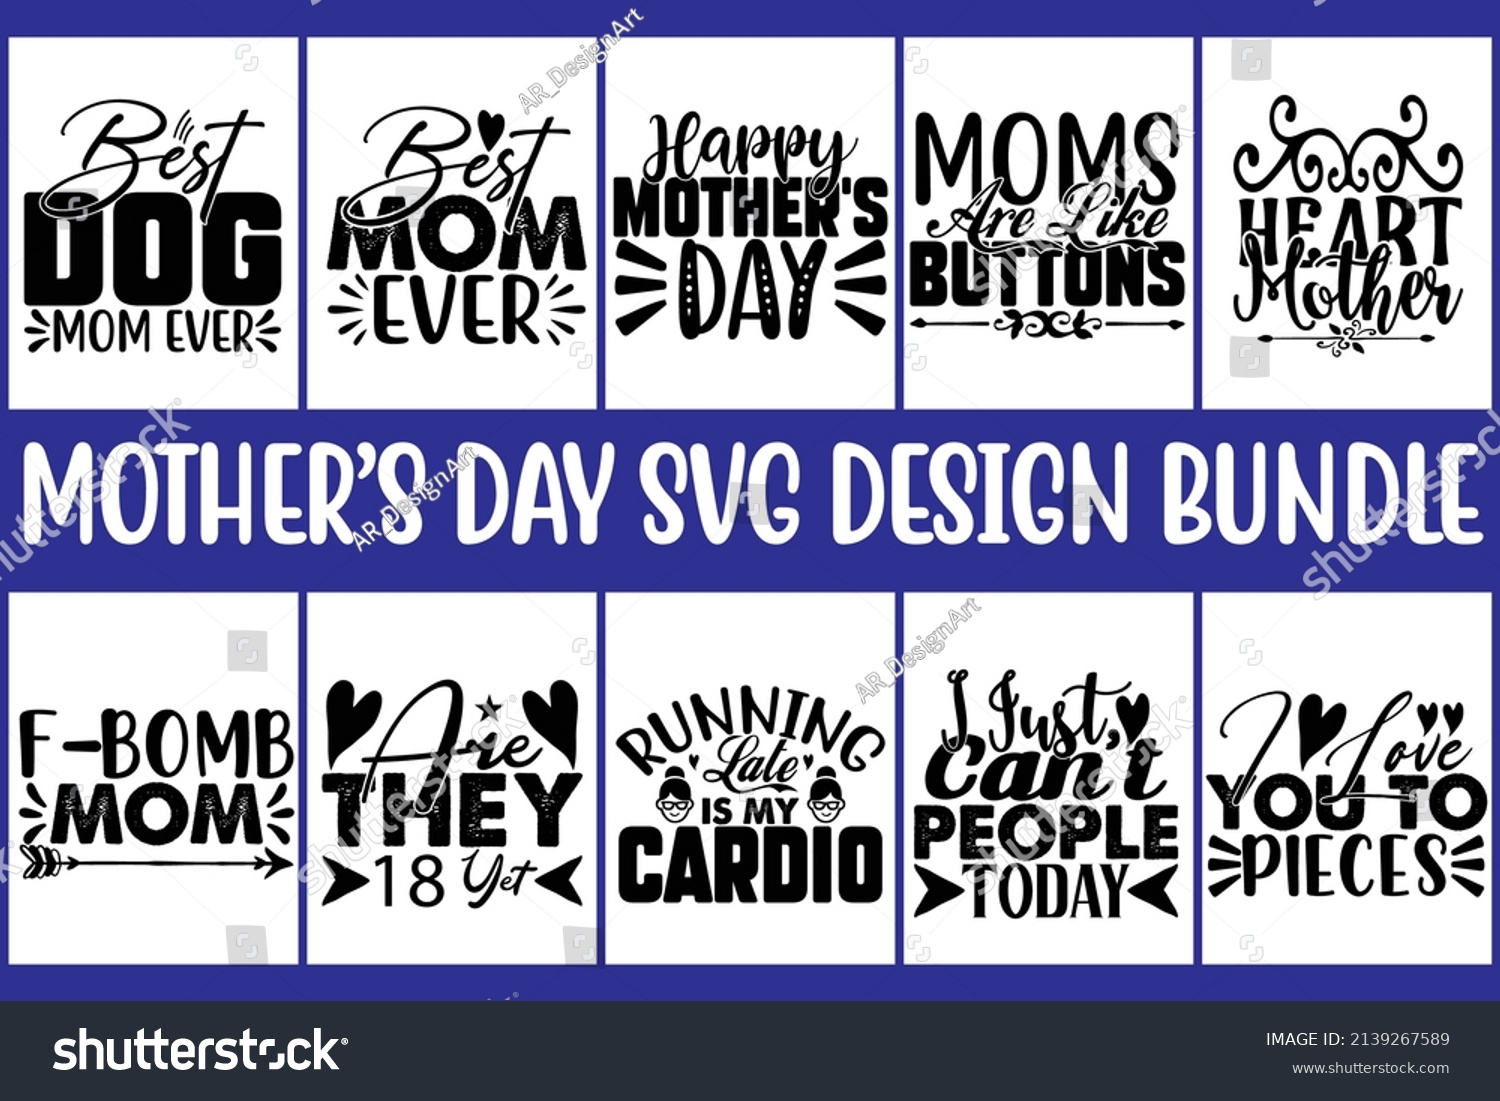 SVG of 10 Mother's Day Svg Design Bundle, vector file. svg